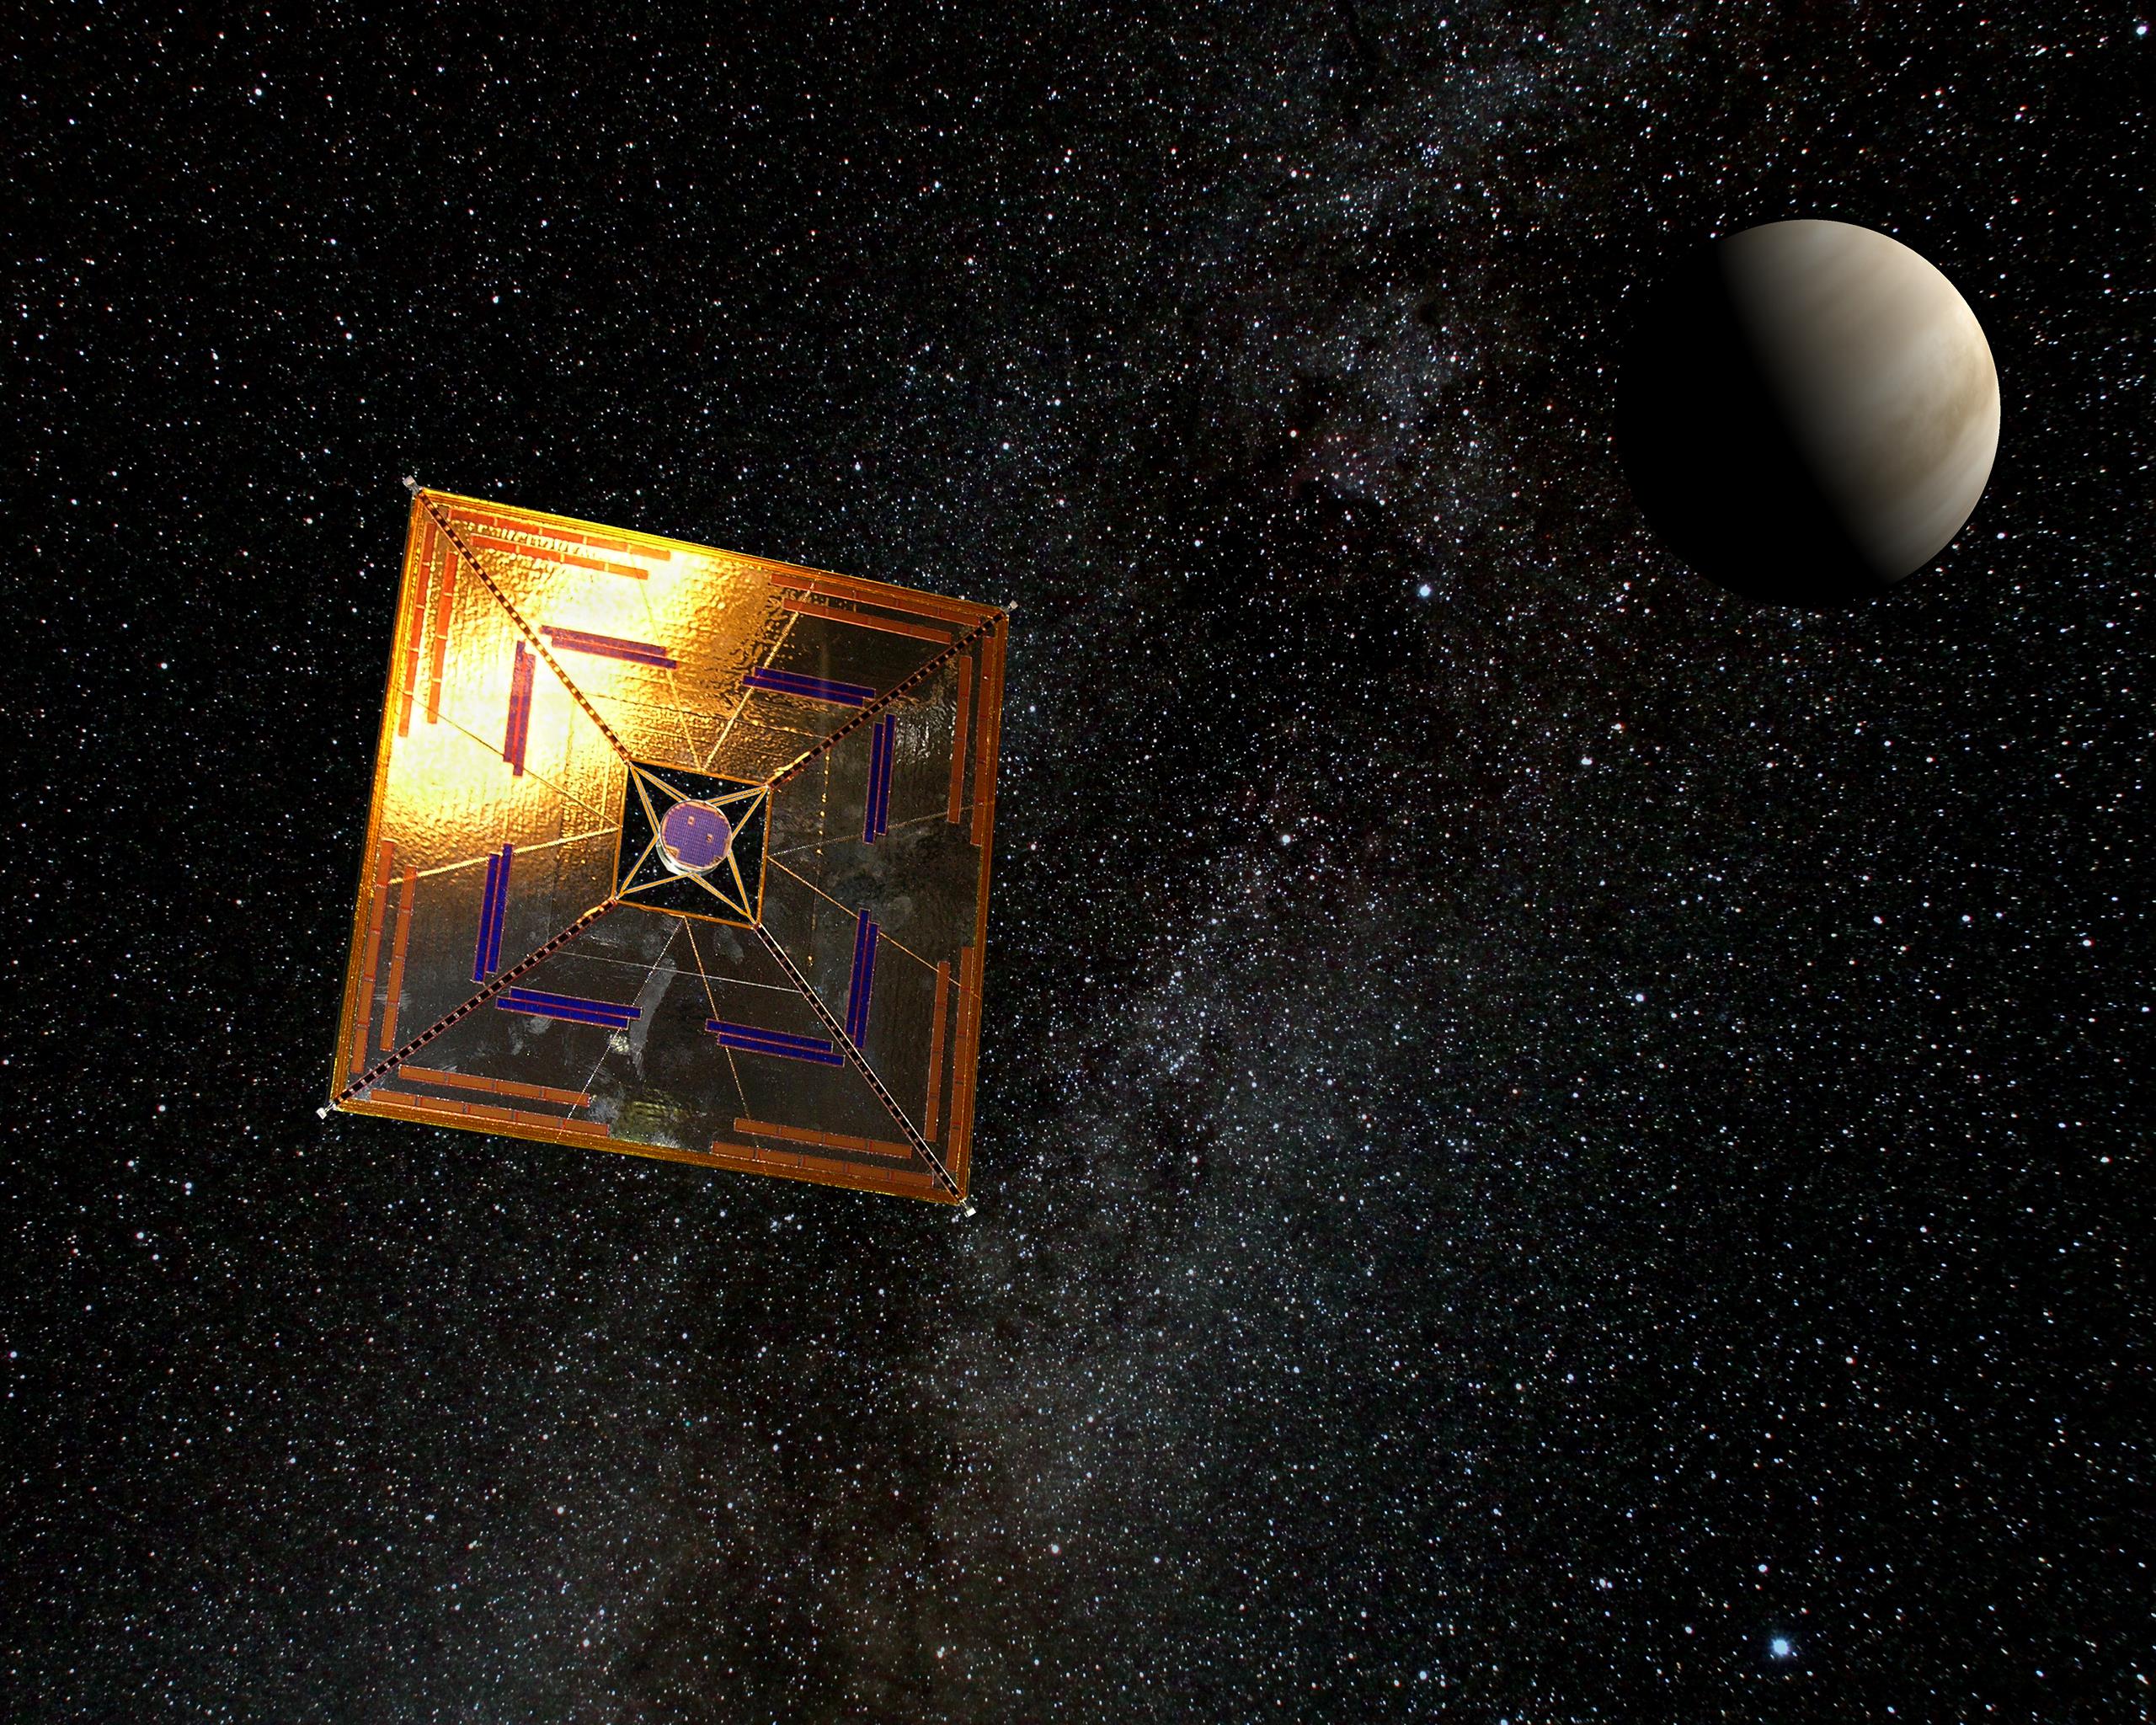 En kunstners illustration af IKAROS rumsonden. IKAROS er en rumsonde, der anvender et solsejl som drivkraft i rummet, fremfor de konventionelle brændstofs raketter.